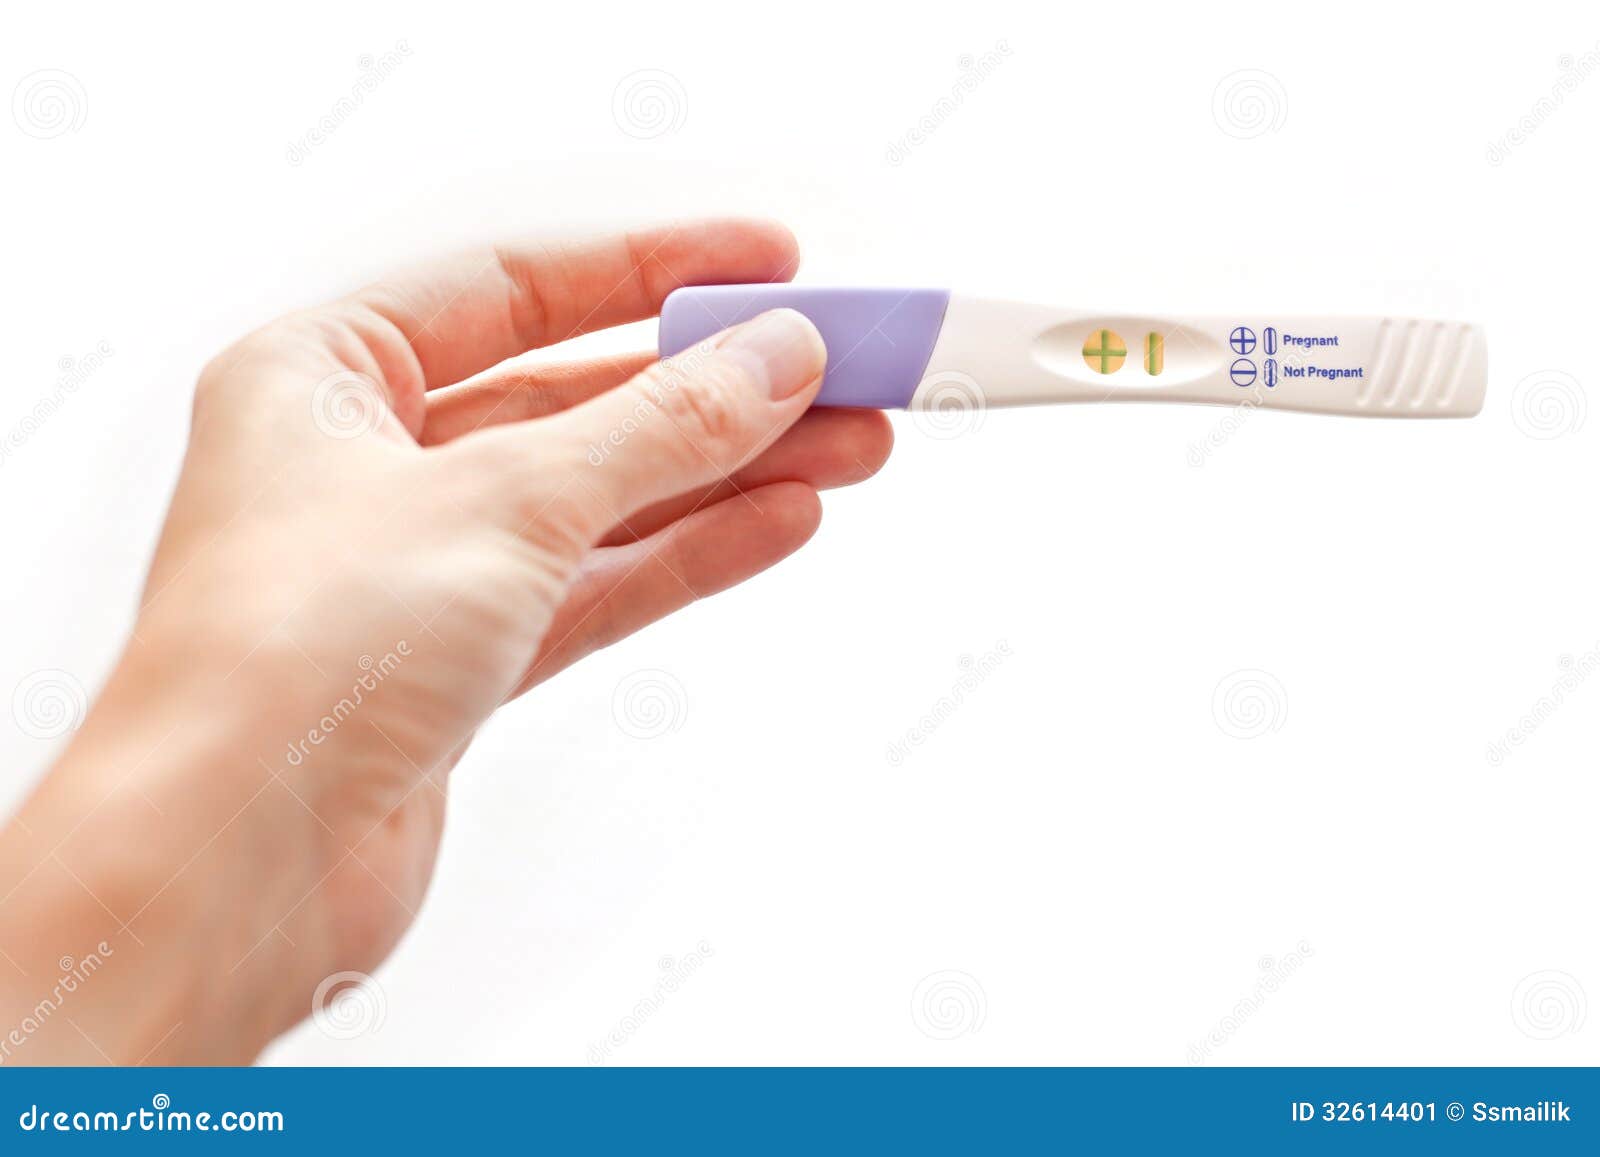 Тест на беременность 3 на ютубе. Тест на беременность. Тест на беременность пластиковый. Тест на беременность в руке. Тест на беременность фото.